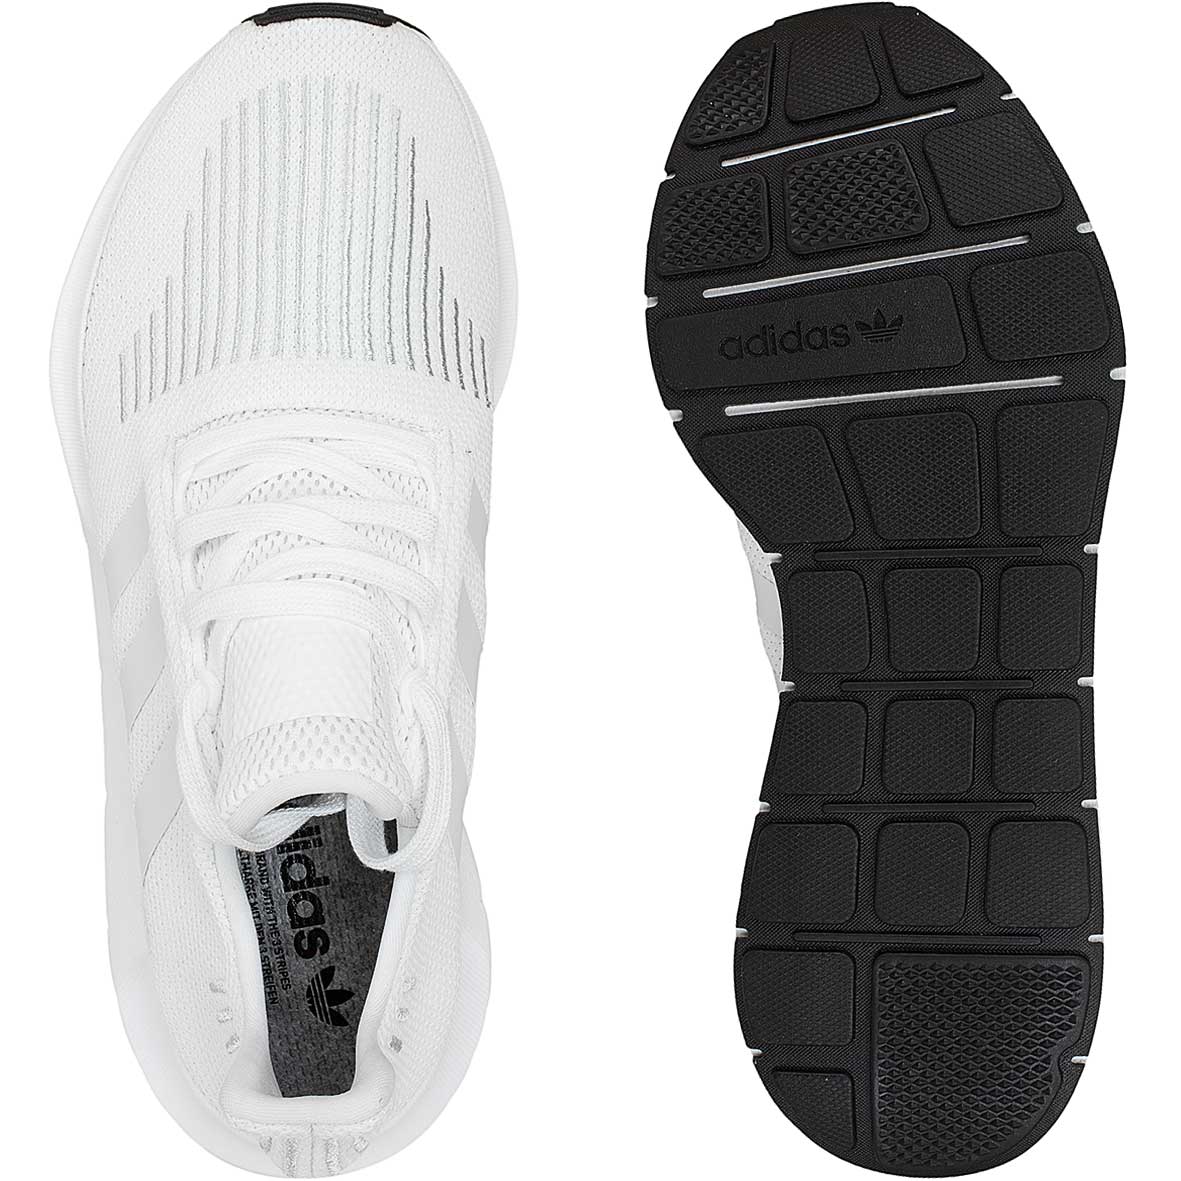 ☆ Adidas Originals Sneaker Swift Run weiß/weiß/schwarz - hier bestellen!